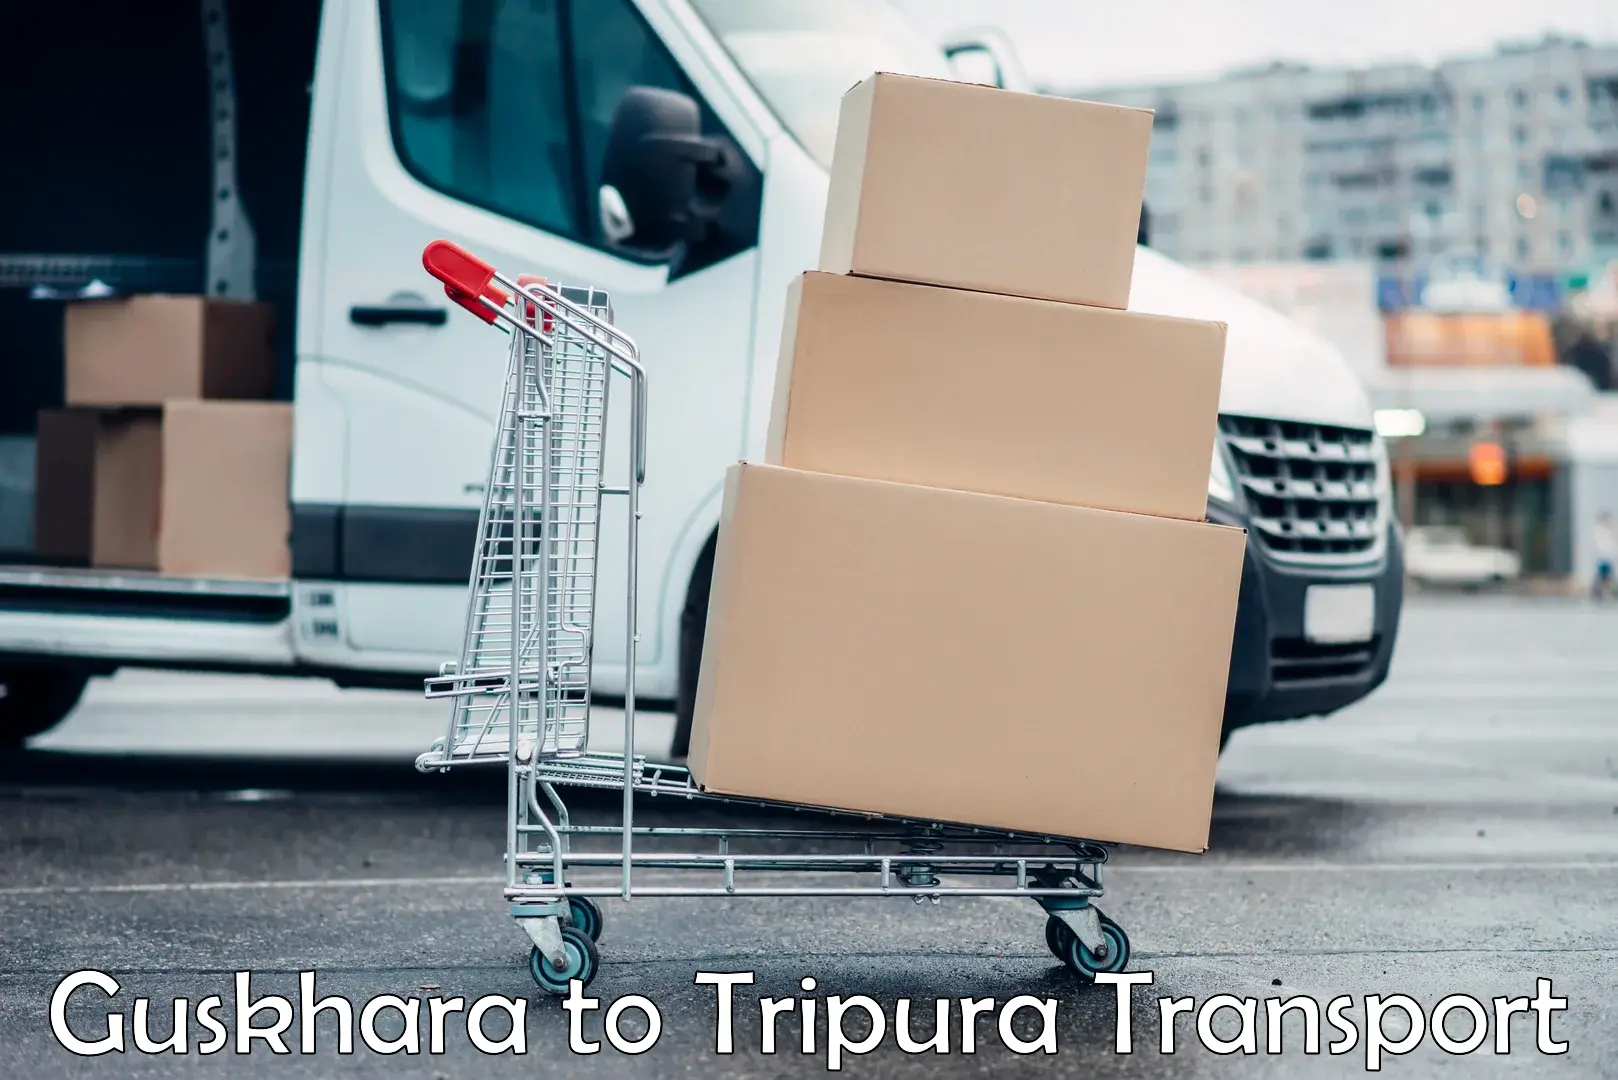 Shipping services Guskhara to Udaipur Tripura